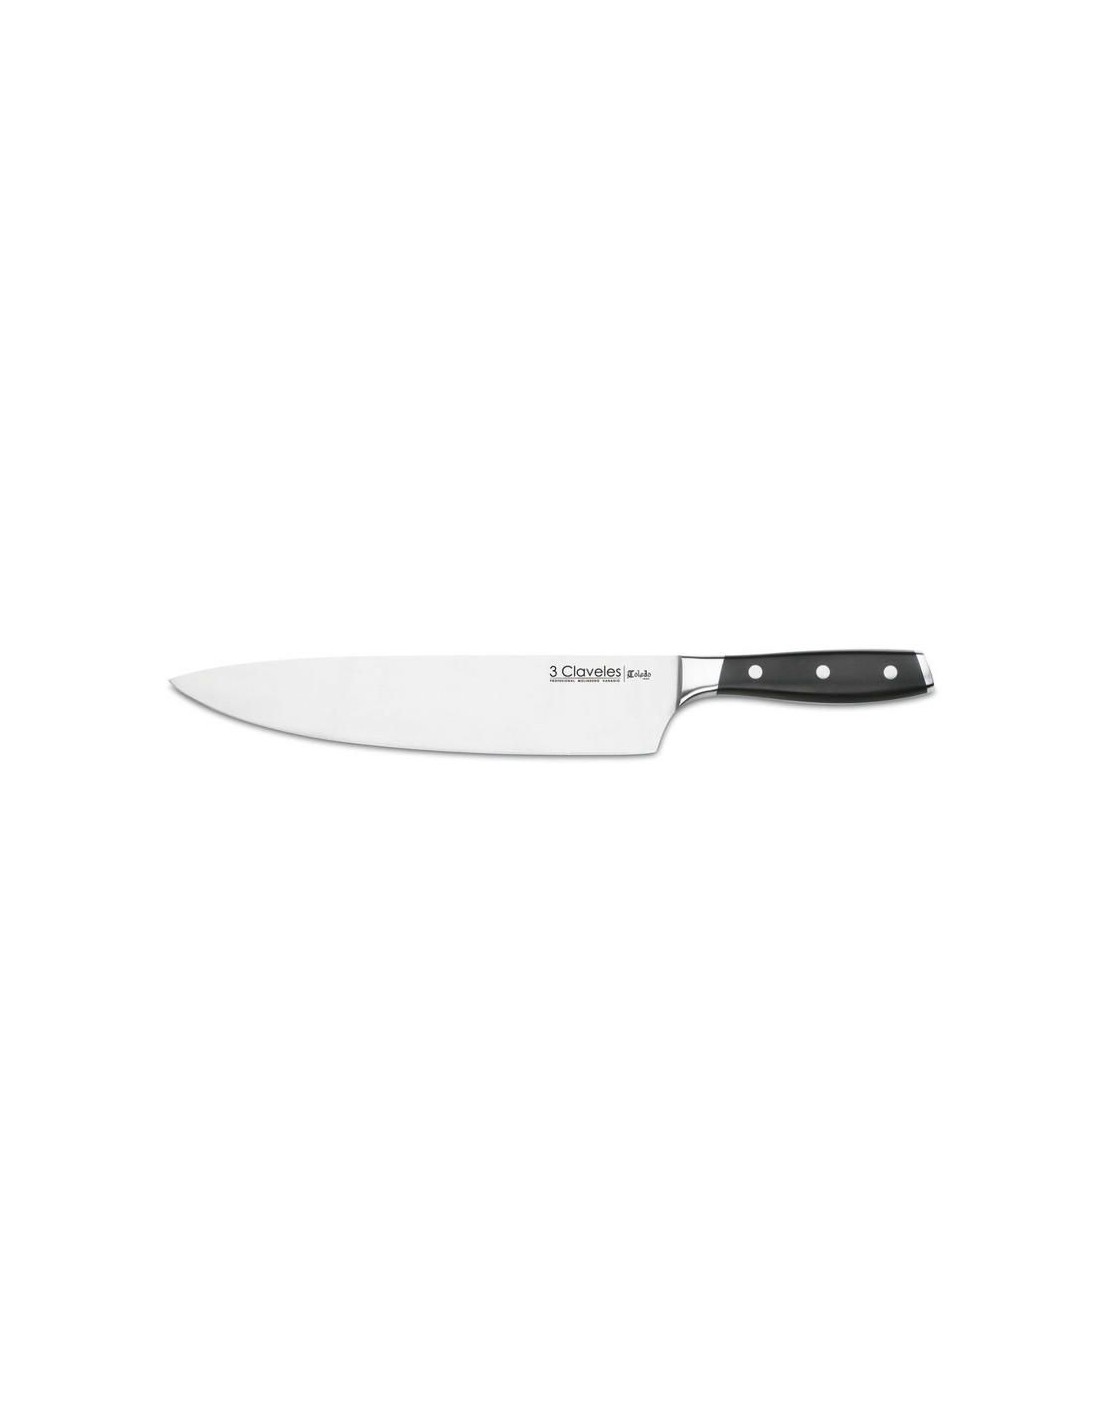 Cuchillo para chef Global G-17, el cuchillo de cocinero 270 mm